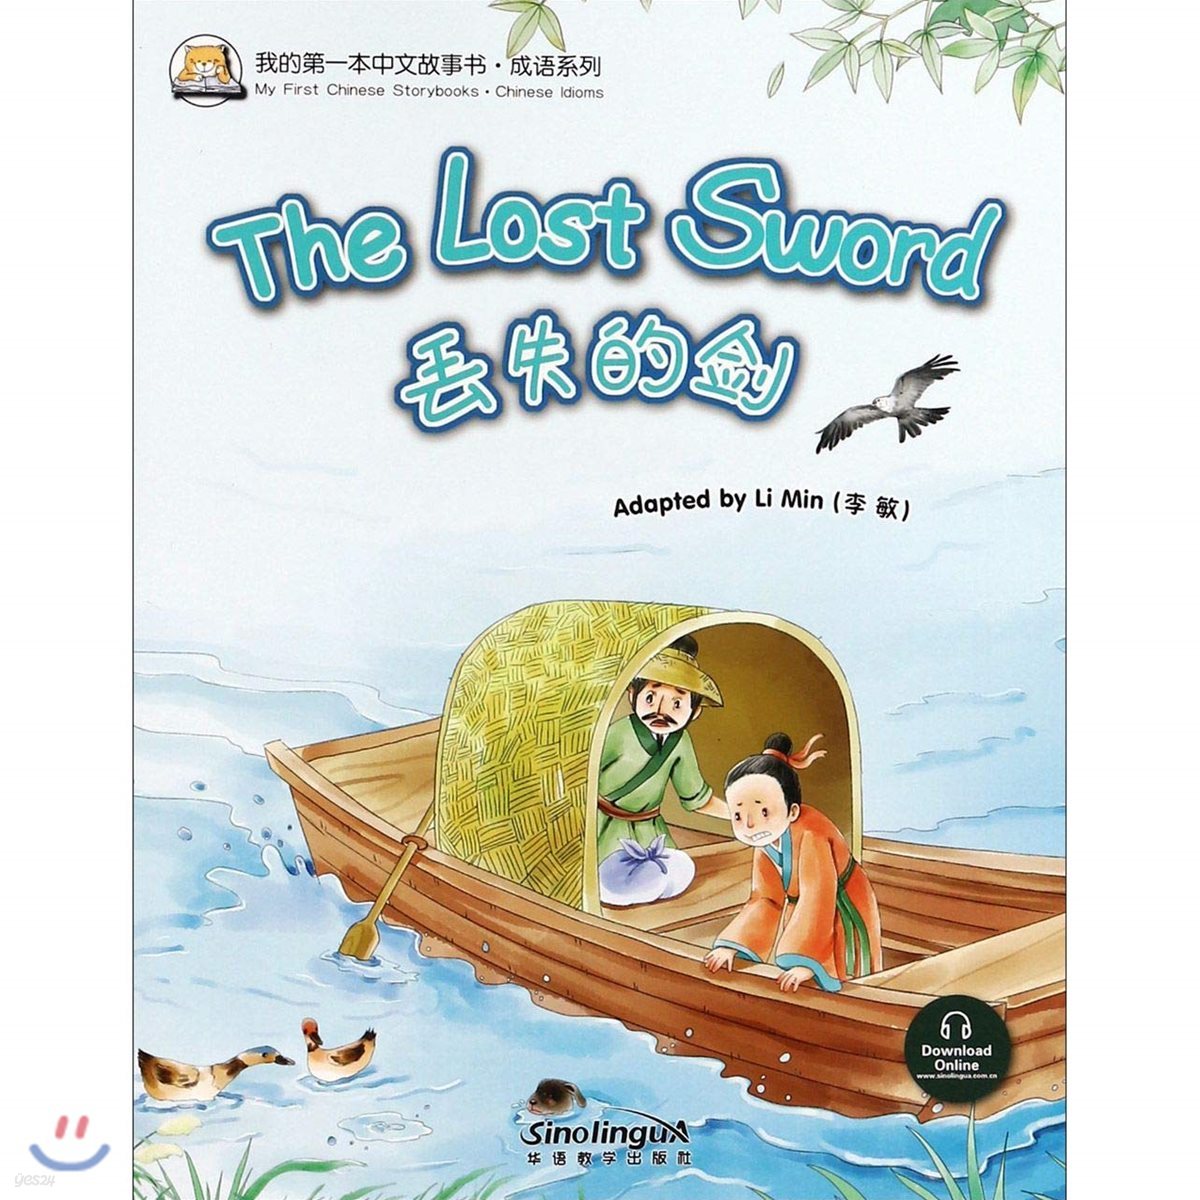 我的第一本中文故事?·成?系列 : ?失的? 아적제일본중문고사서·성어계열 : 주실적검 My First Chinese Storybooks·Chinese Idioms : The Lost Sword